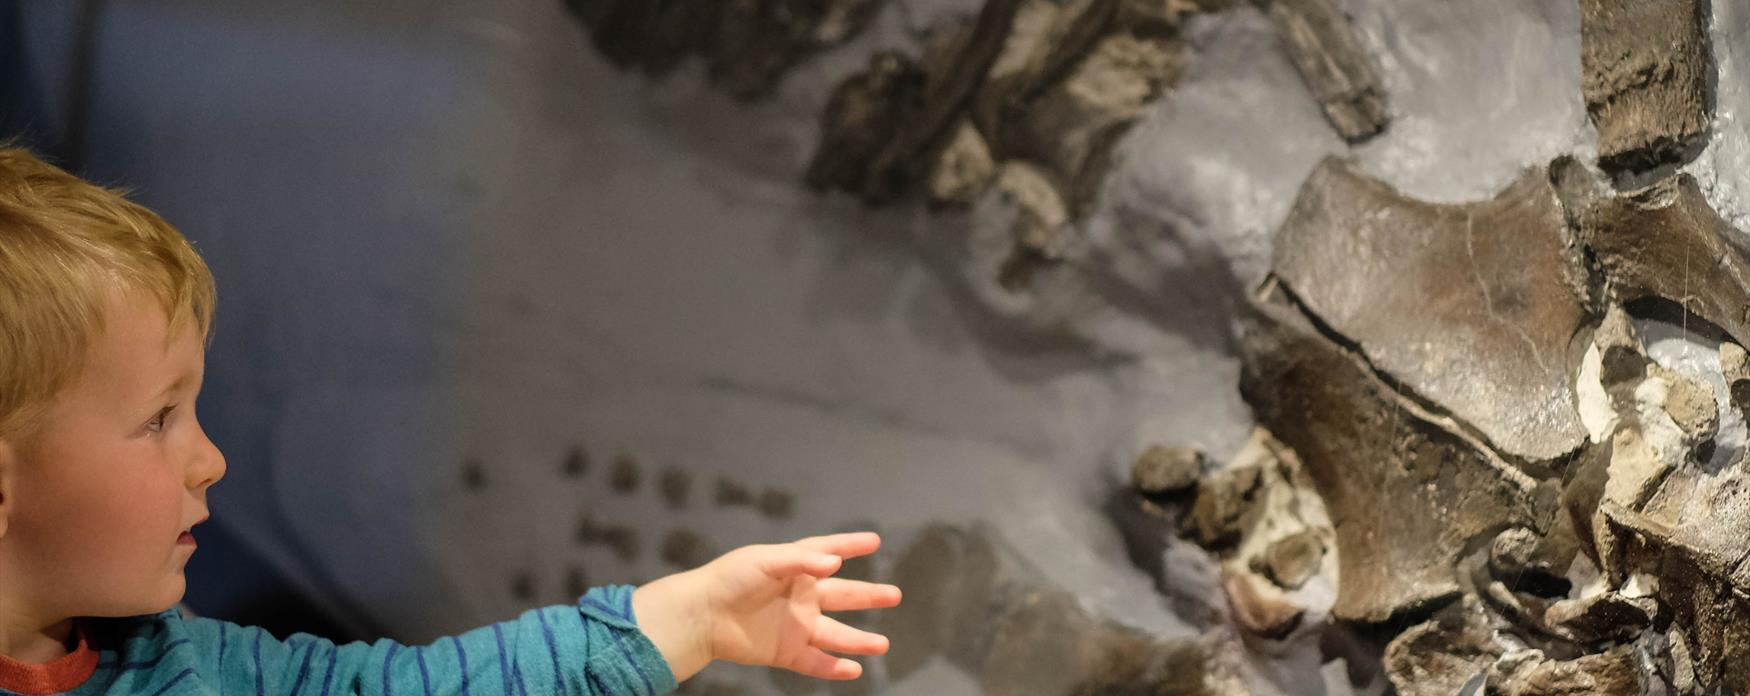 Exploring fossils at Bridport Museum